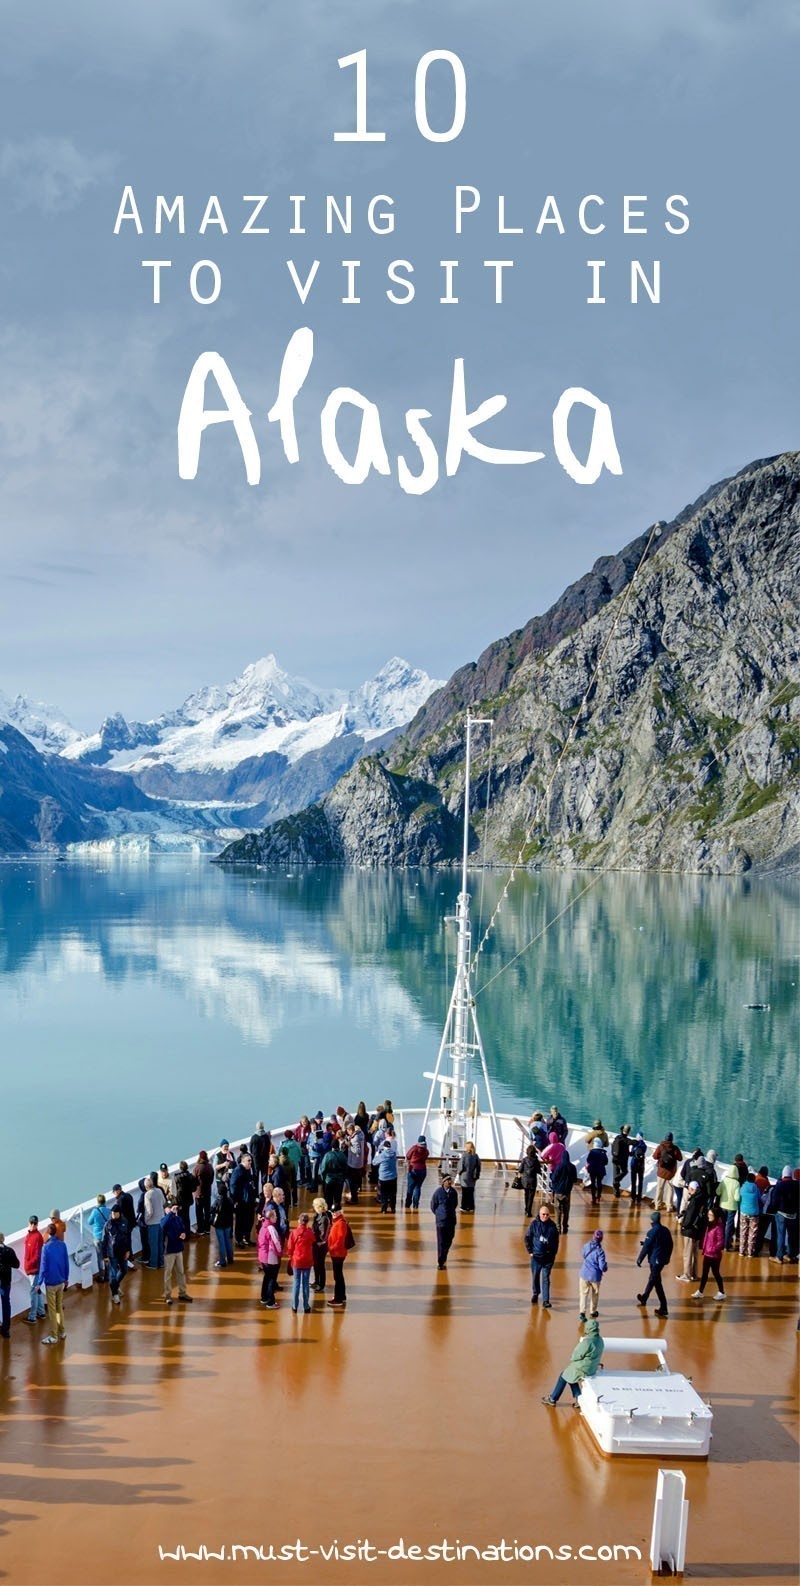 Explore some of the most impressive adventures hidden away in amazing Alaska #alaska